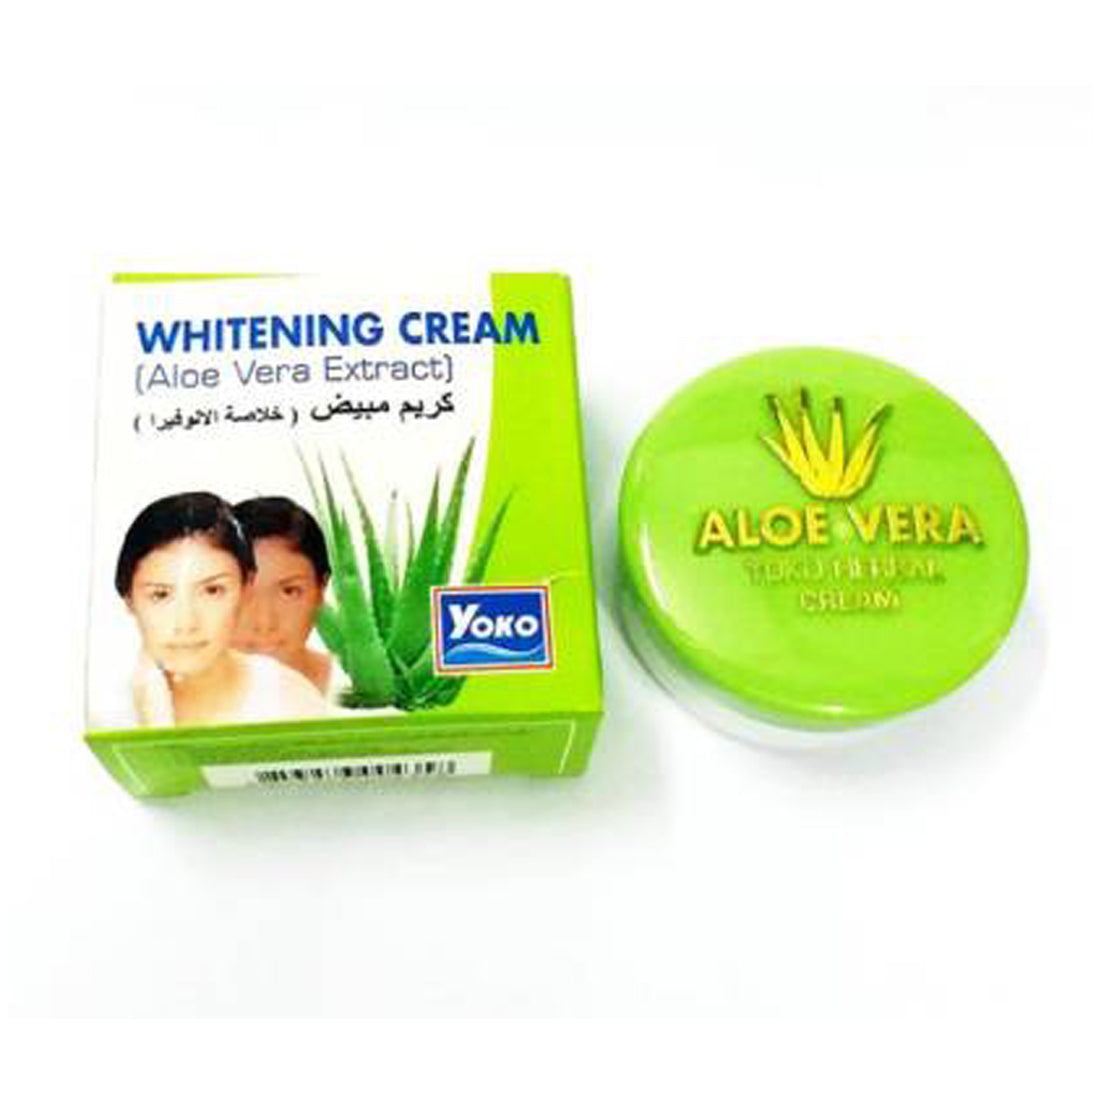 Yoko Aloe-Vera Extract White-ning Cream -4gm Pack Of 3